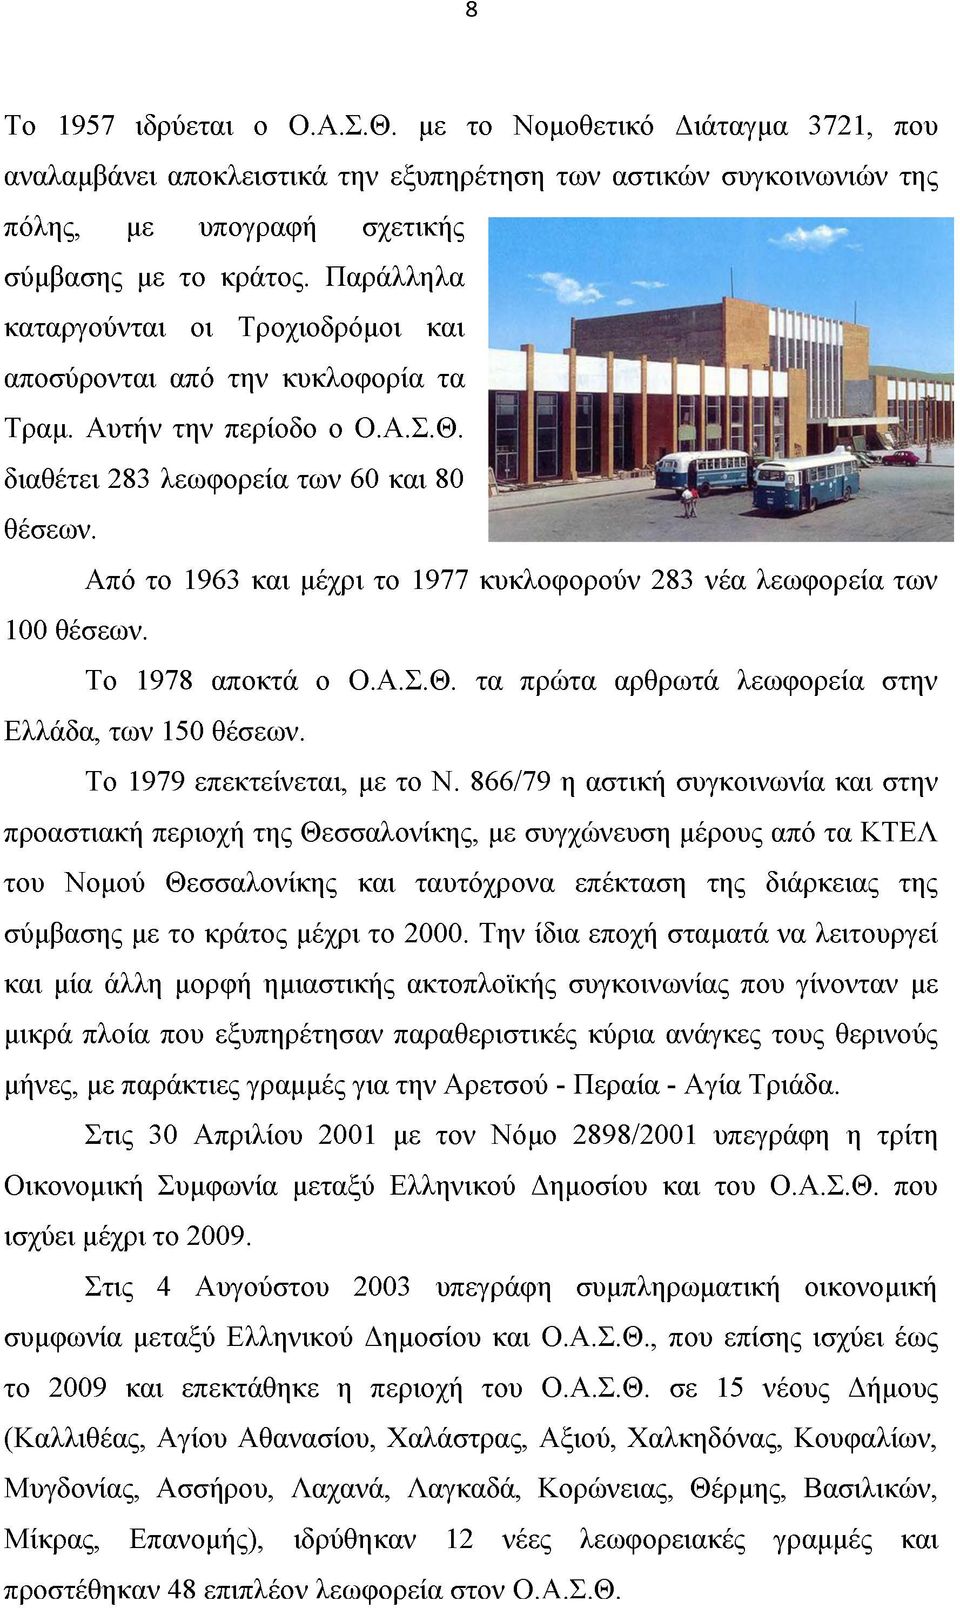 Από το 1963 και μέχρι το 1977 κυκλοφορούν 283 νέα λεωφορεία των 100 θέσεων. Το 1978 αποκτά ο Ο.Α.Σ.Θ. τα πρώτα αρθρωτά λεωφορεία στην Ελλάδα, των 150 θέσεων. Το 1979 επεκτείνεται, με το Ν.